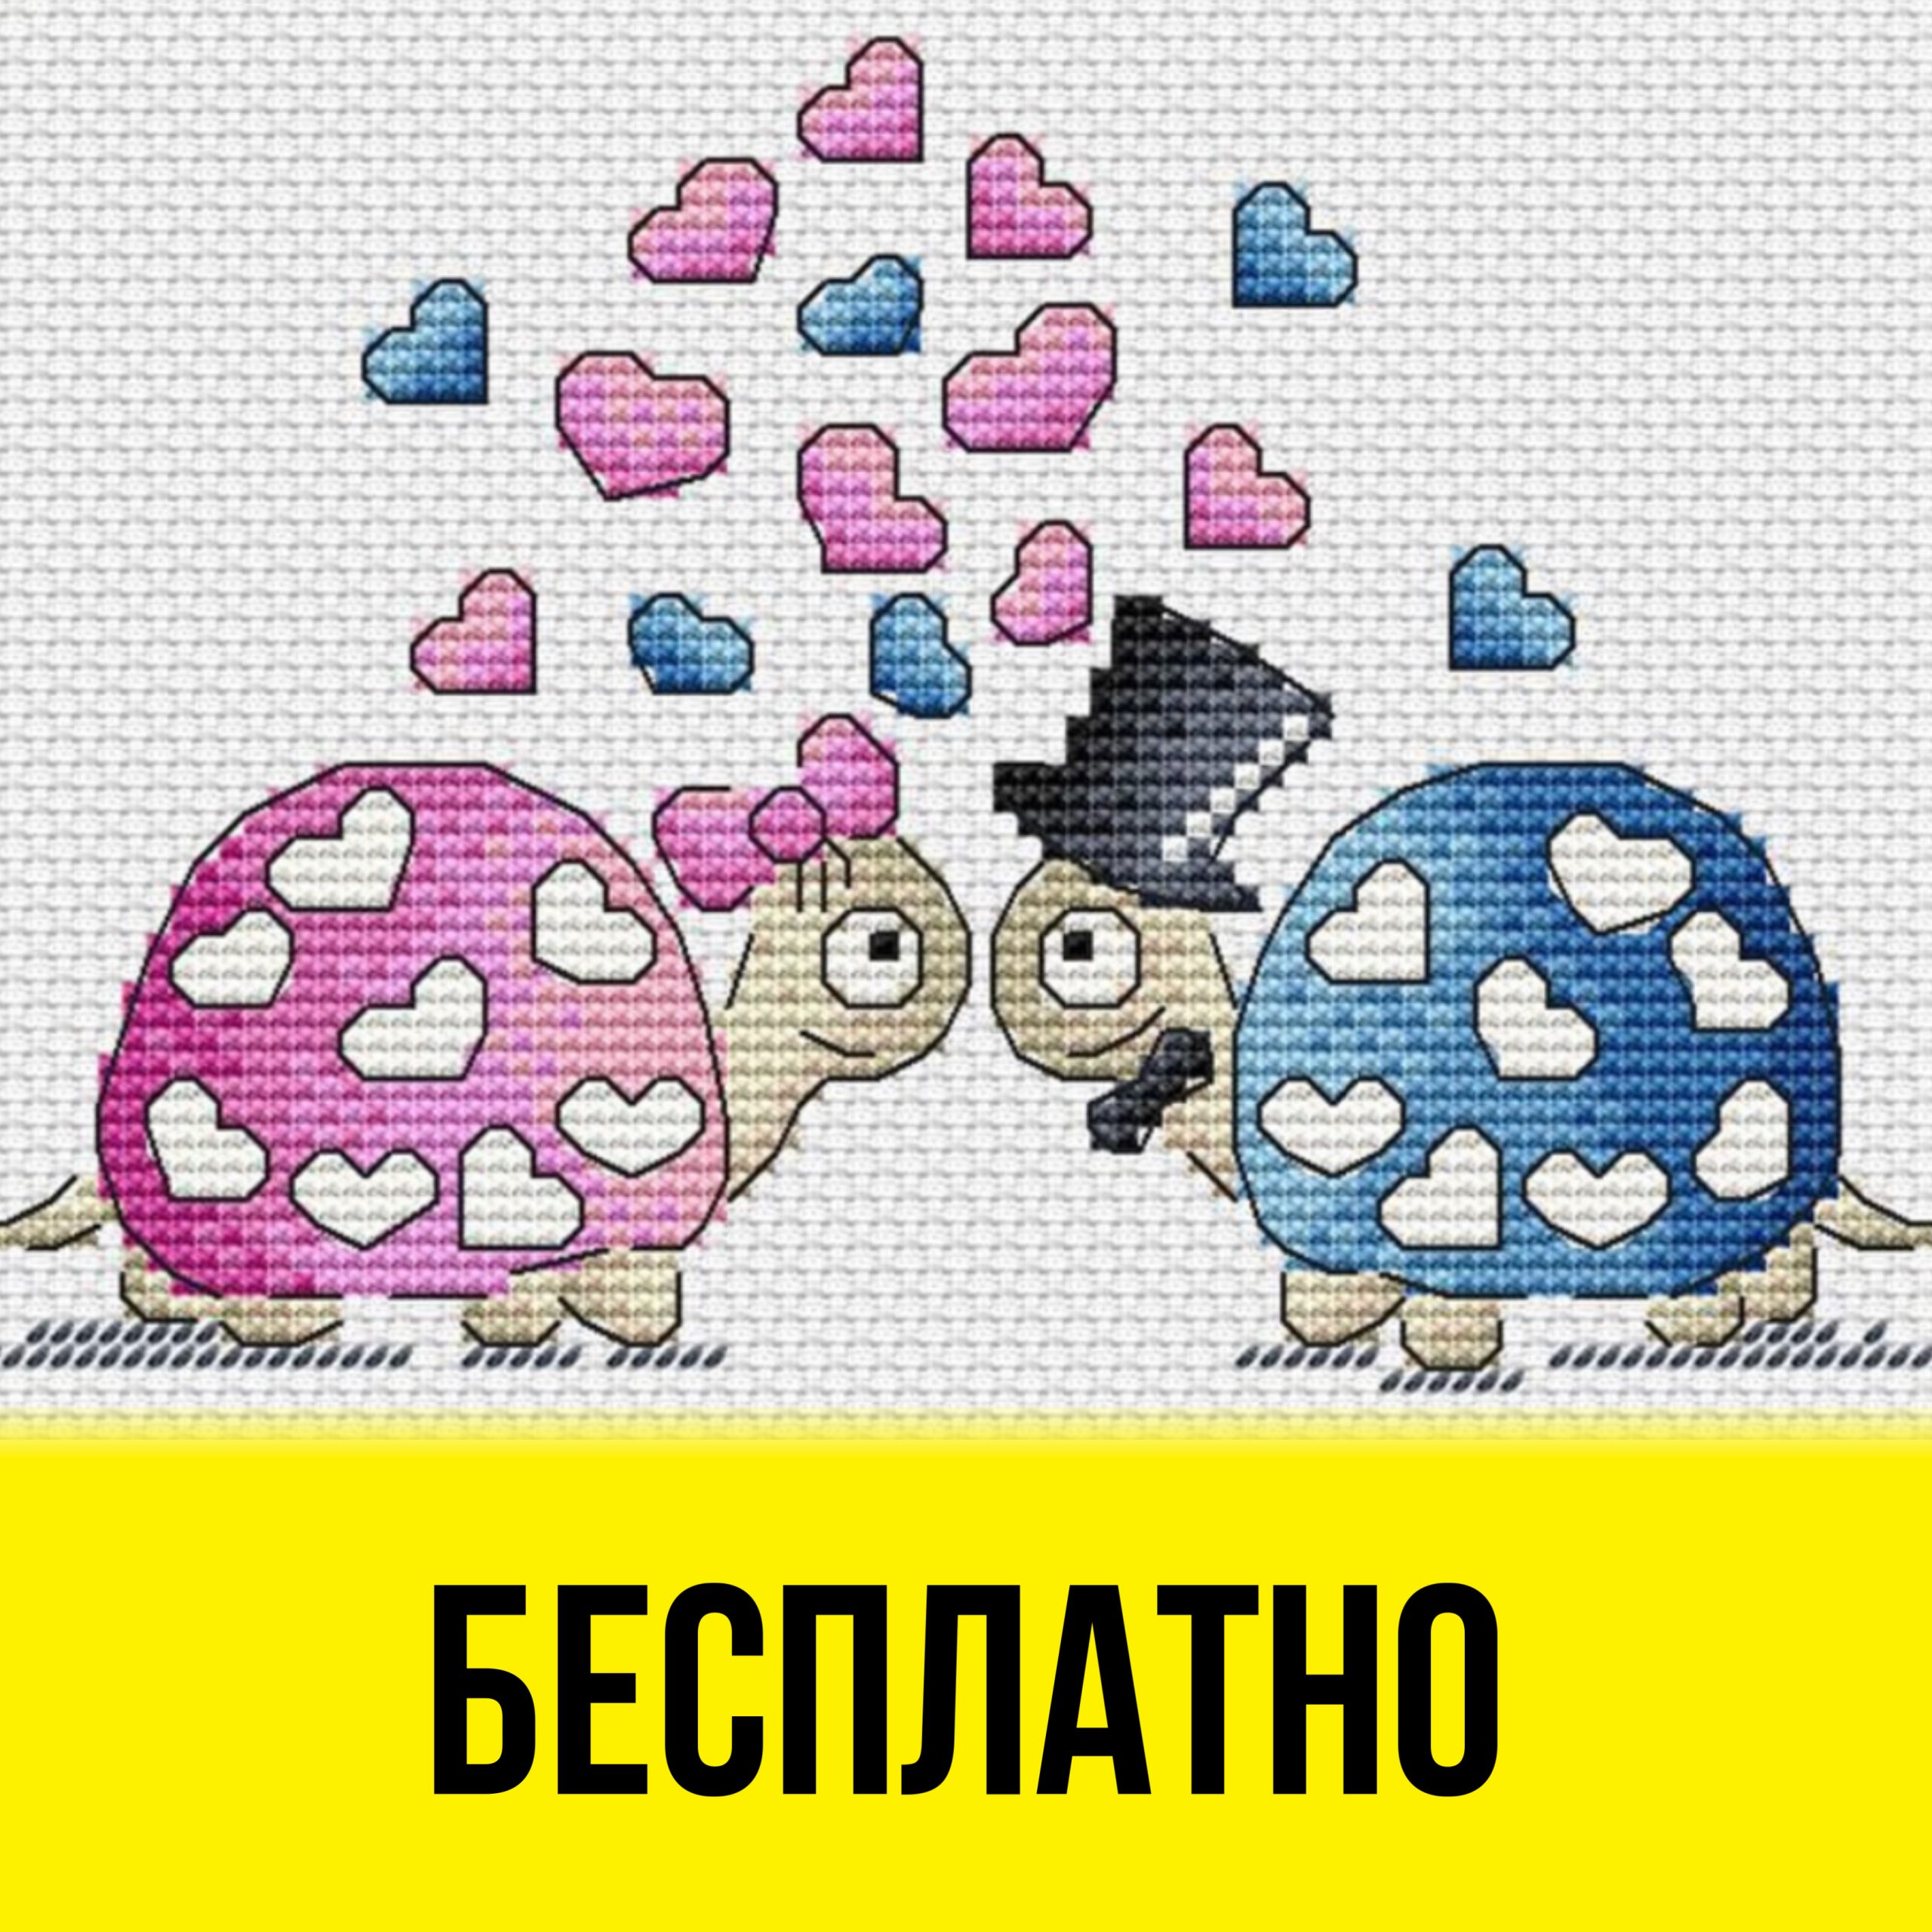 Бесплатная схема вышивки крестом с влюблёнными черепашками от Ирины Загородской.